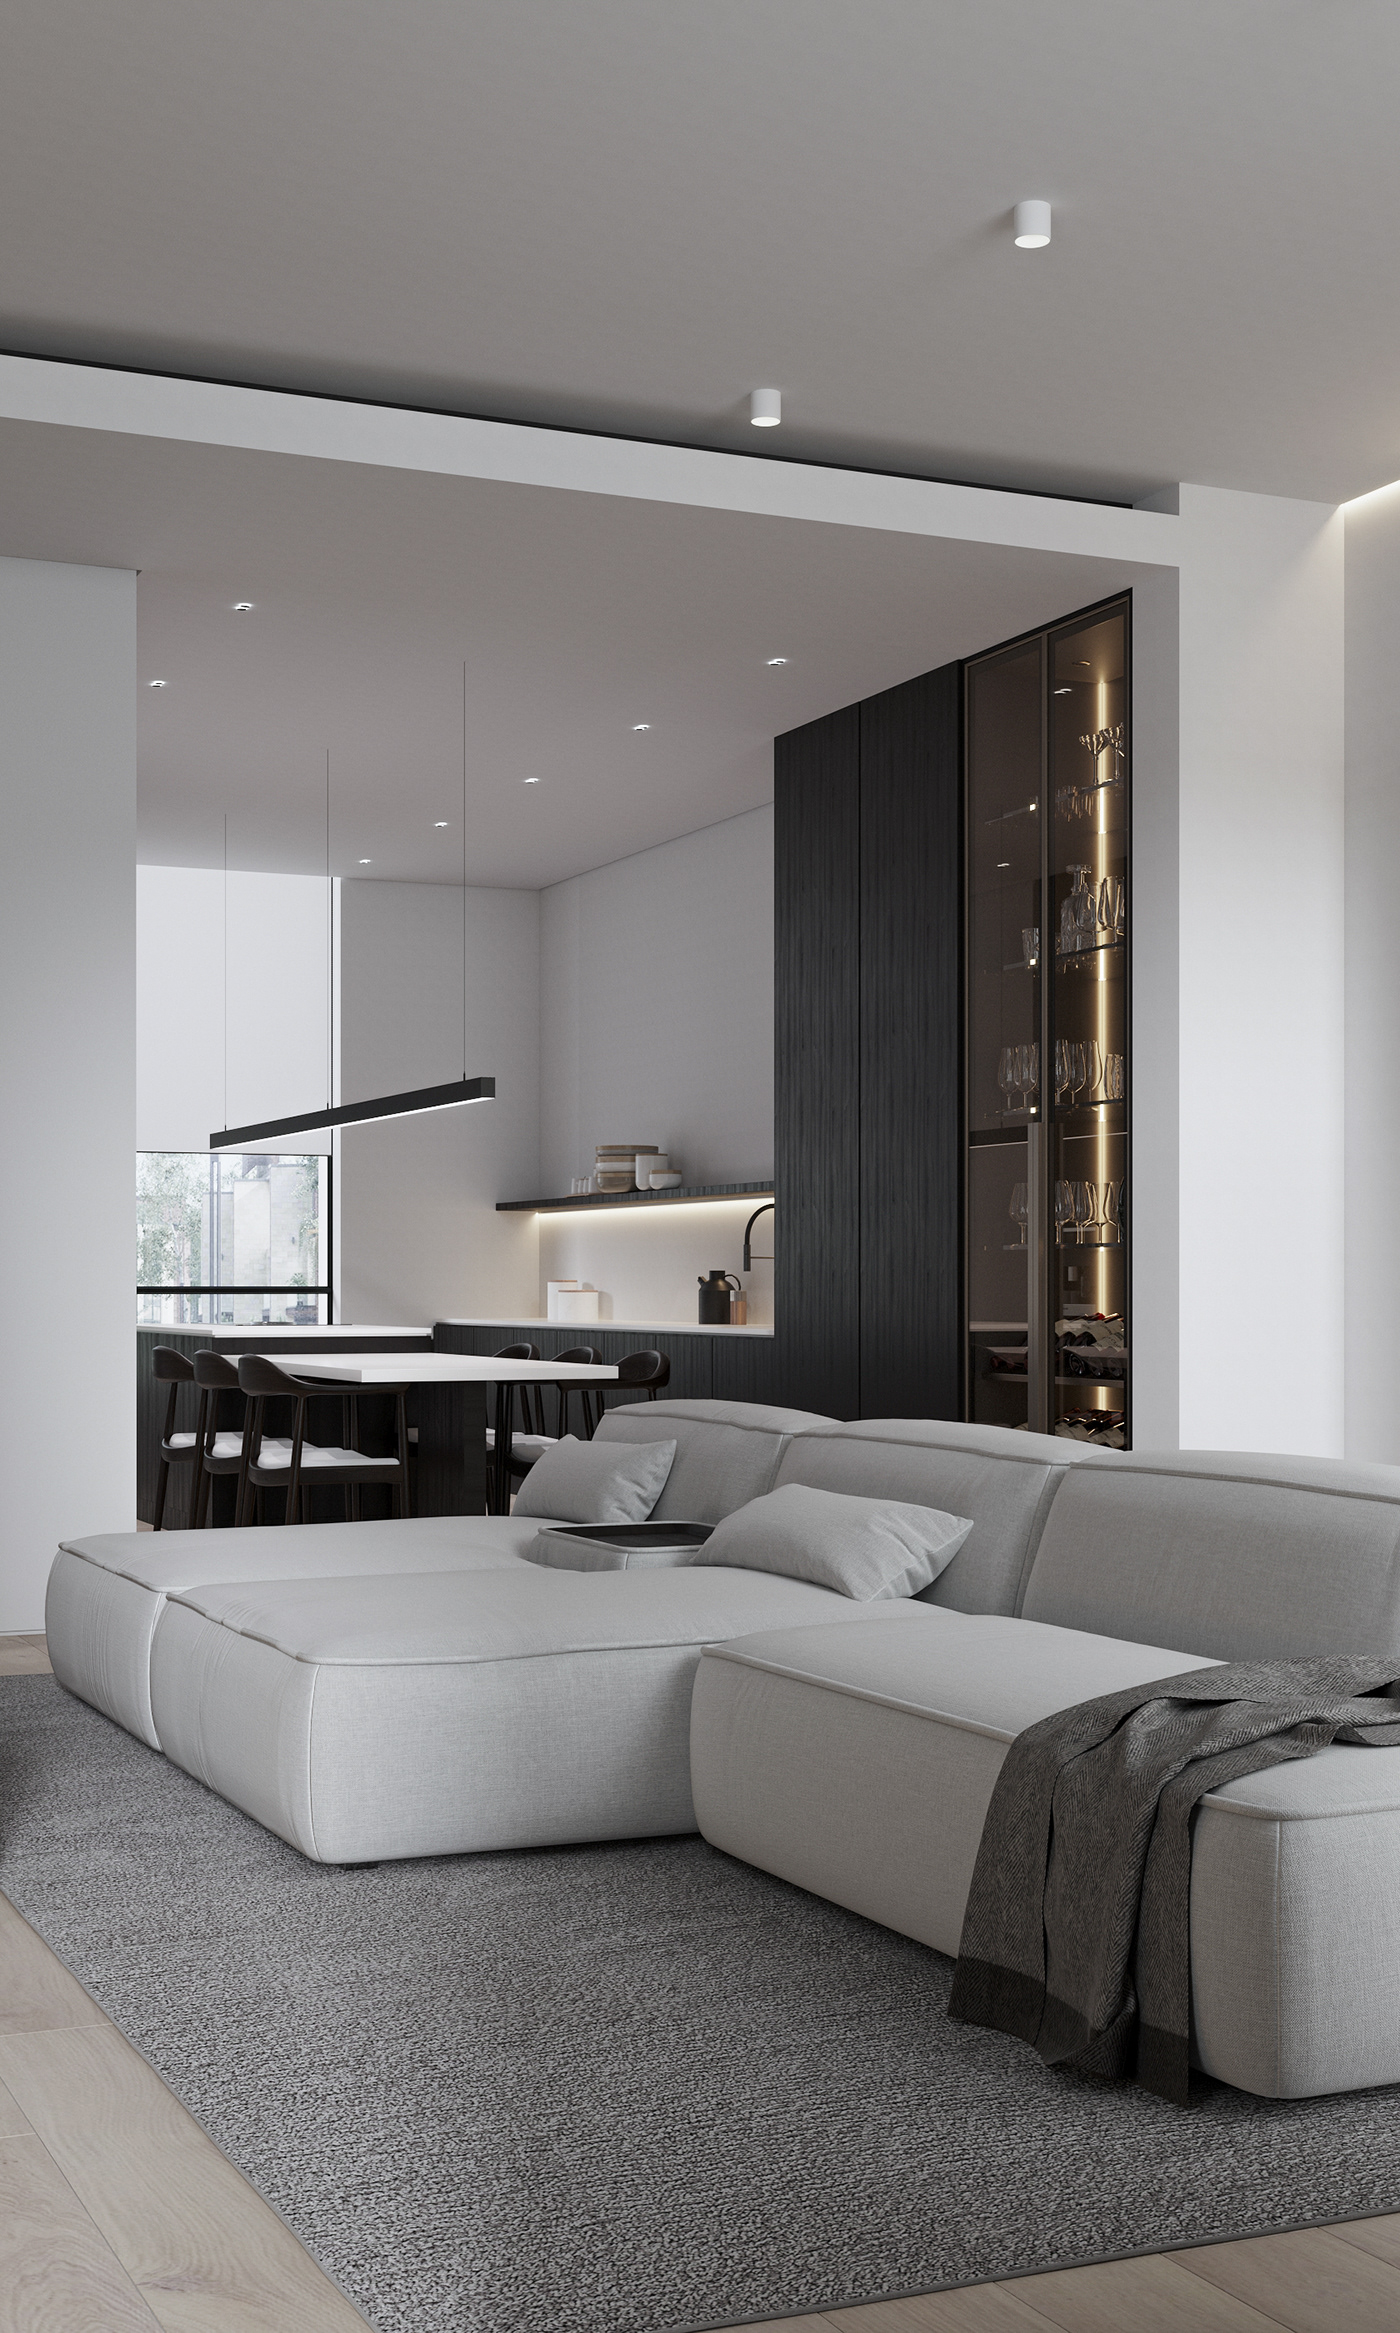 3ds max architecture corona render  interior design  Minimalism modern Render visualization дизайн дома дизайн интерьера